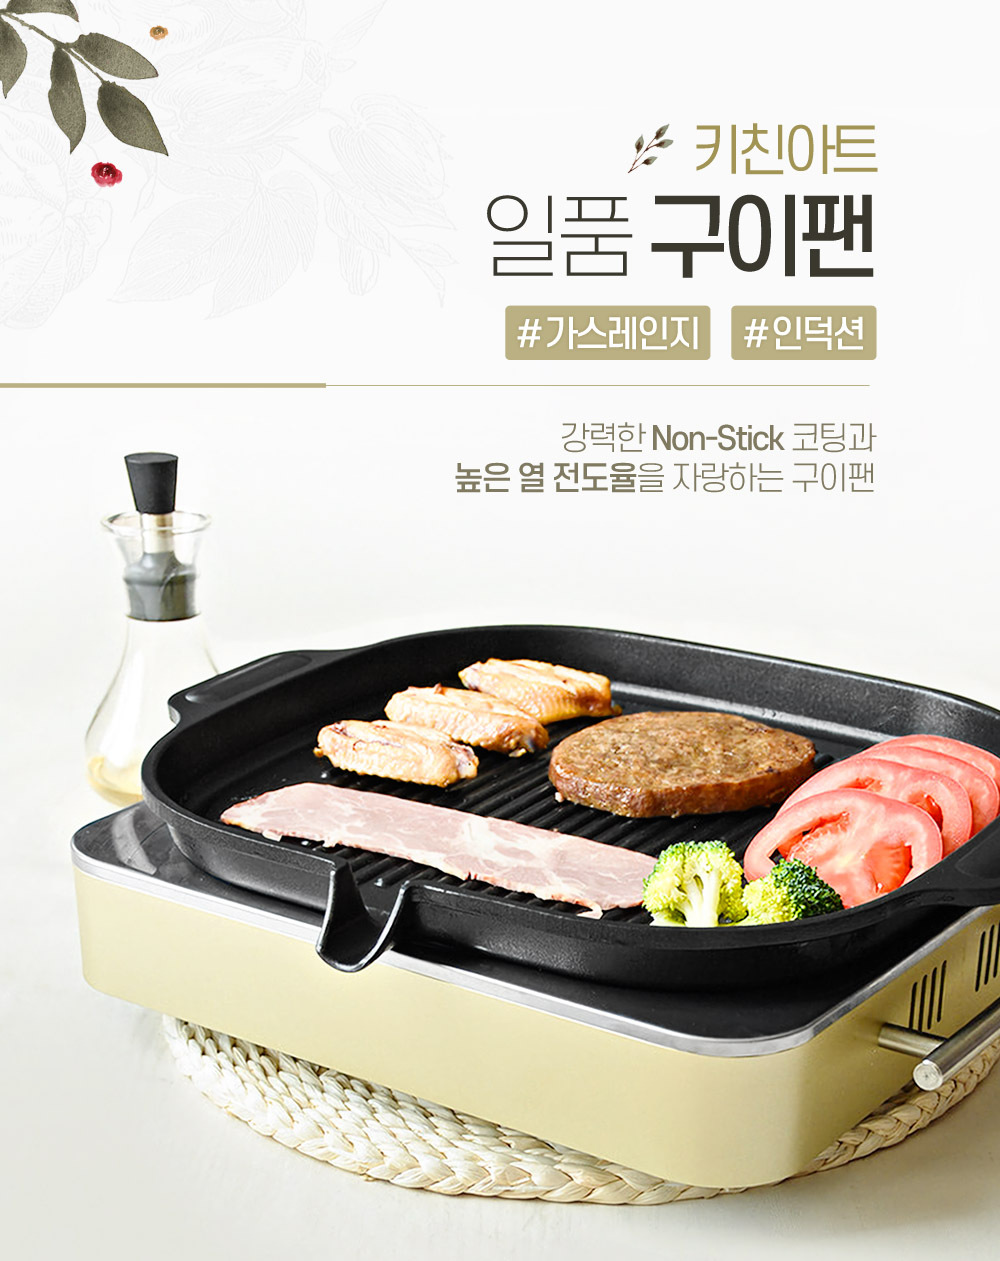 韓國食品-[KitchenArt] Round Induction BBQ Roaster Korea Grill Pan 38.5x30cm